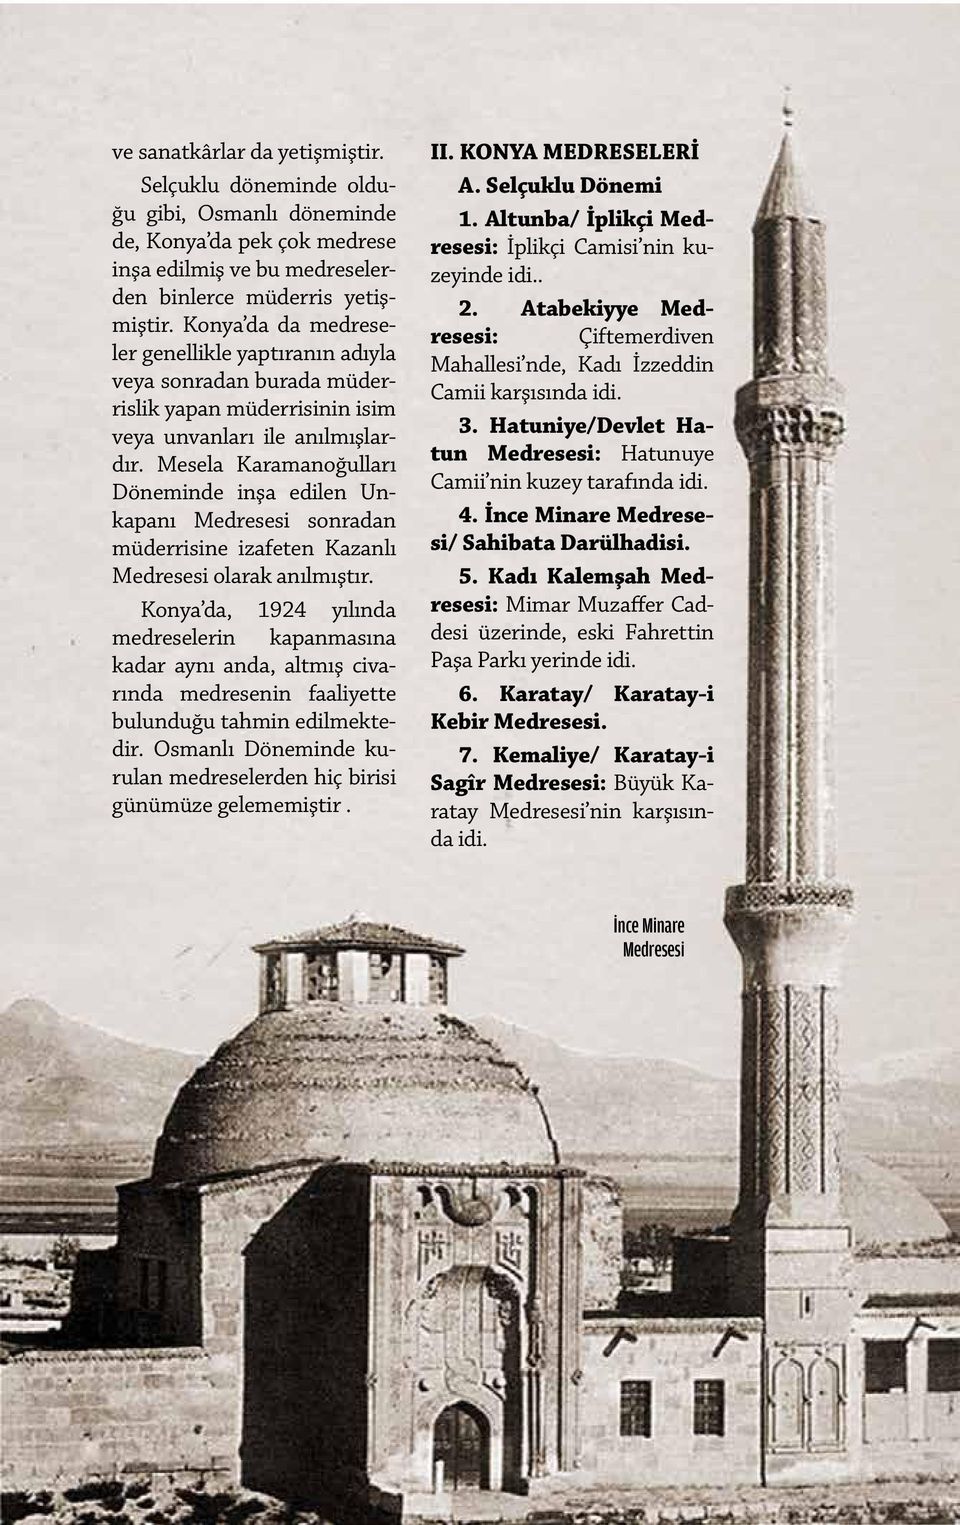 Mesela Karamanoğulları Döneminde inşa edilen Unkapanı Medresesi sonradan müderrisine izafeten Kazanlı Medresesi olarak anılmıştır.